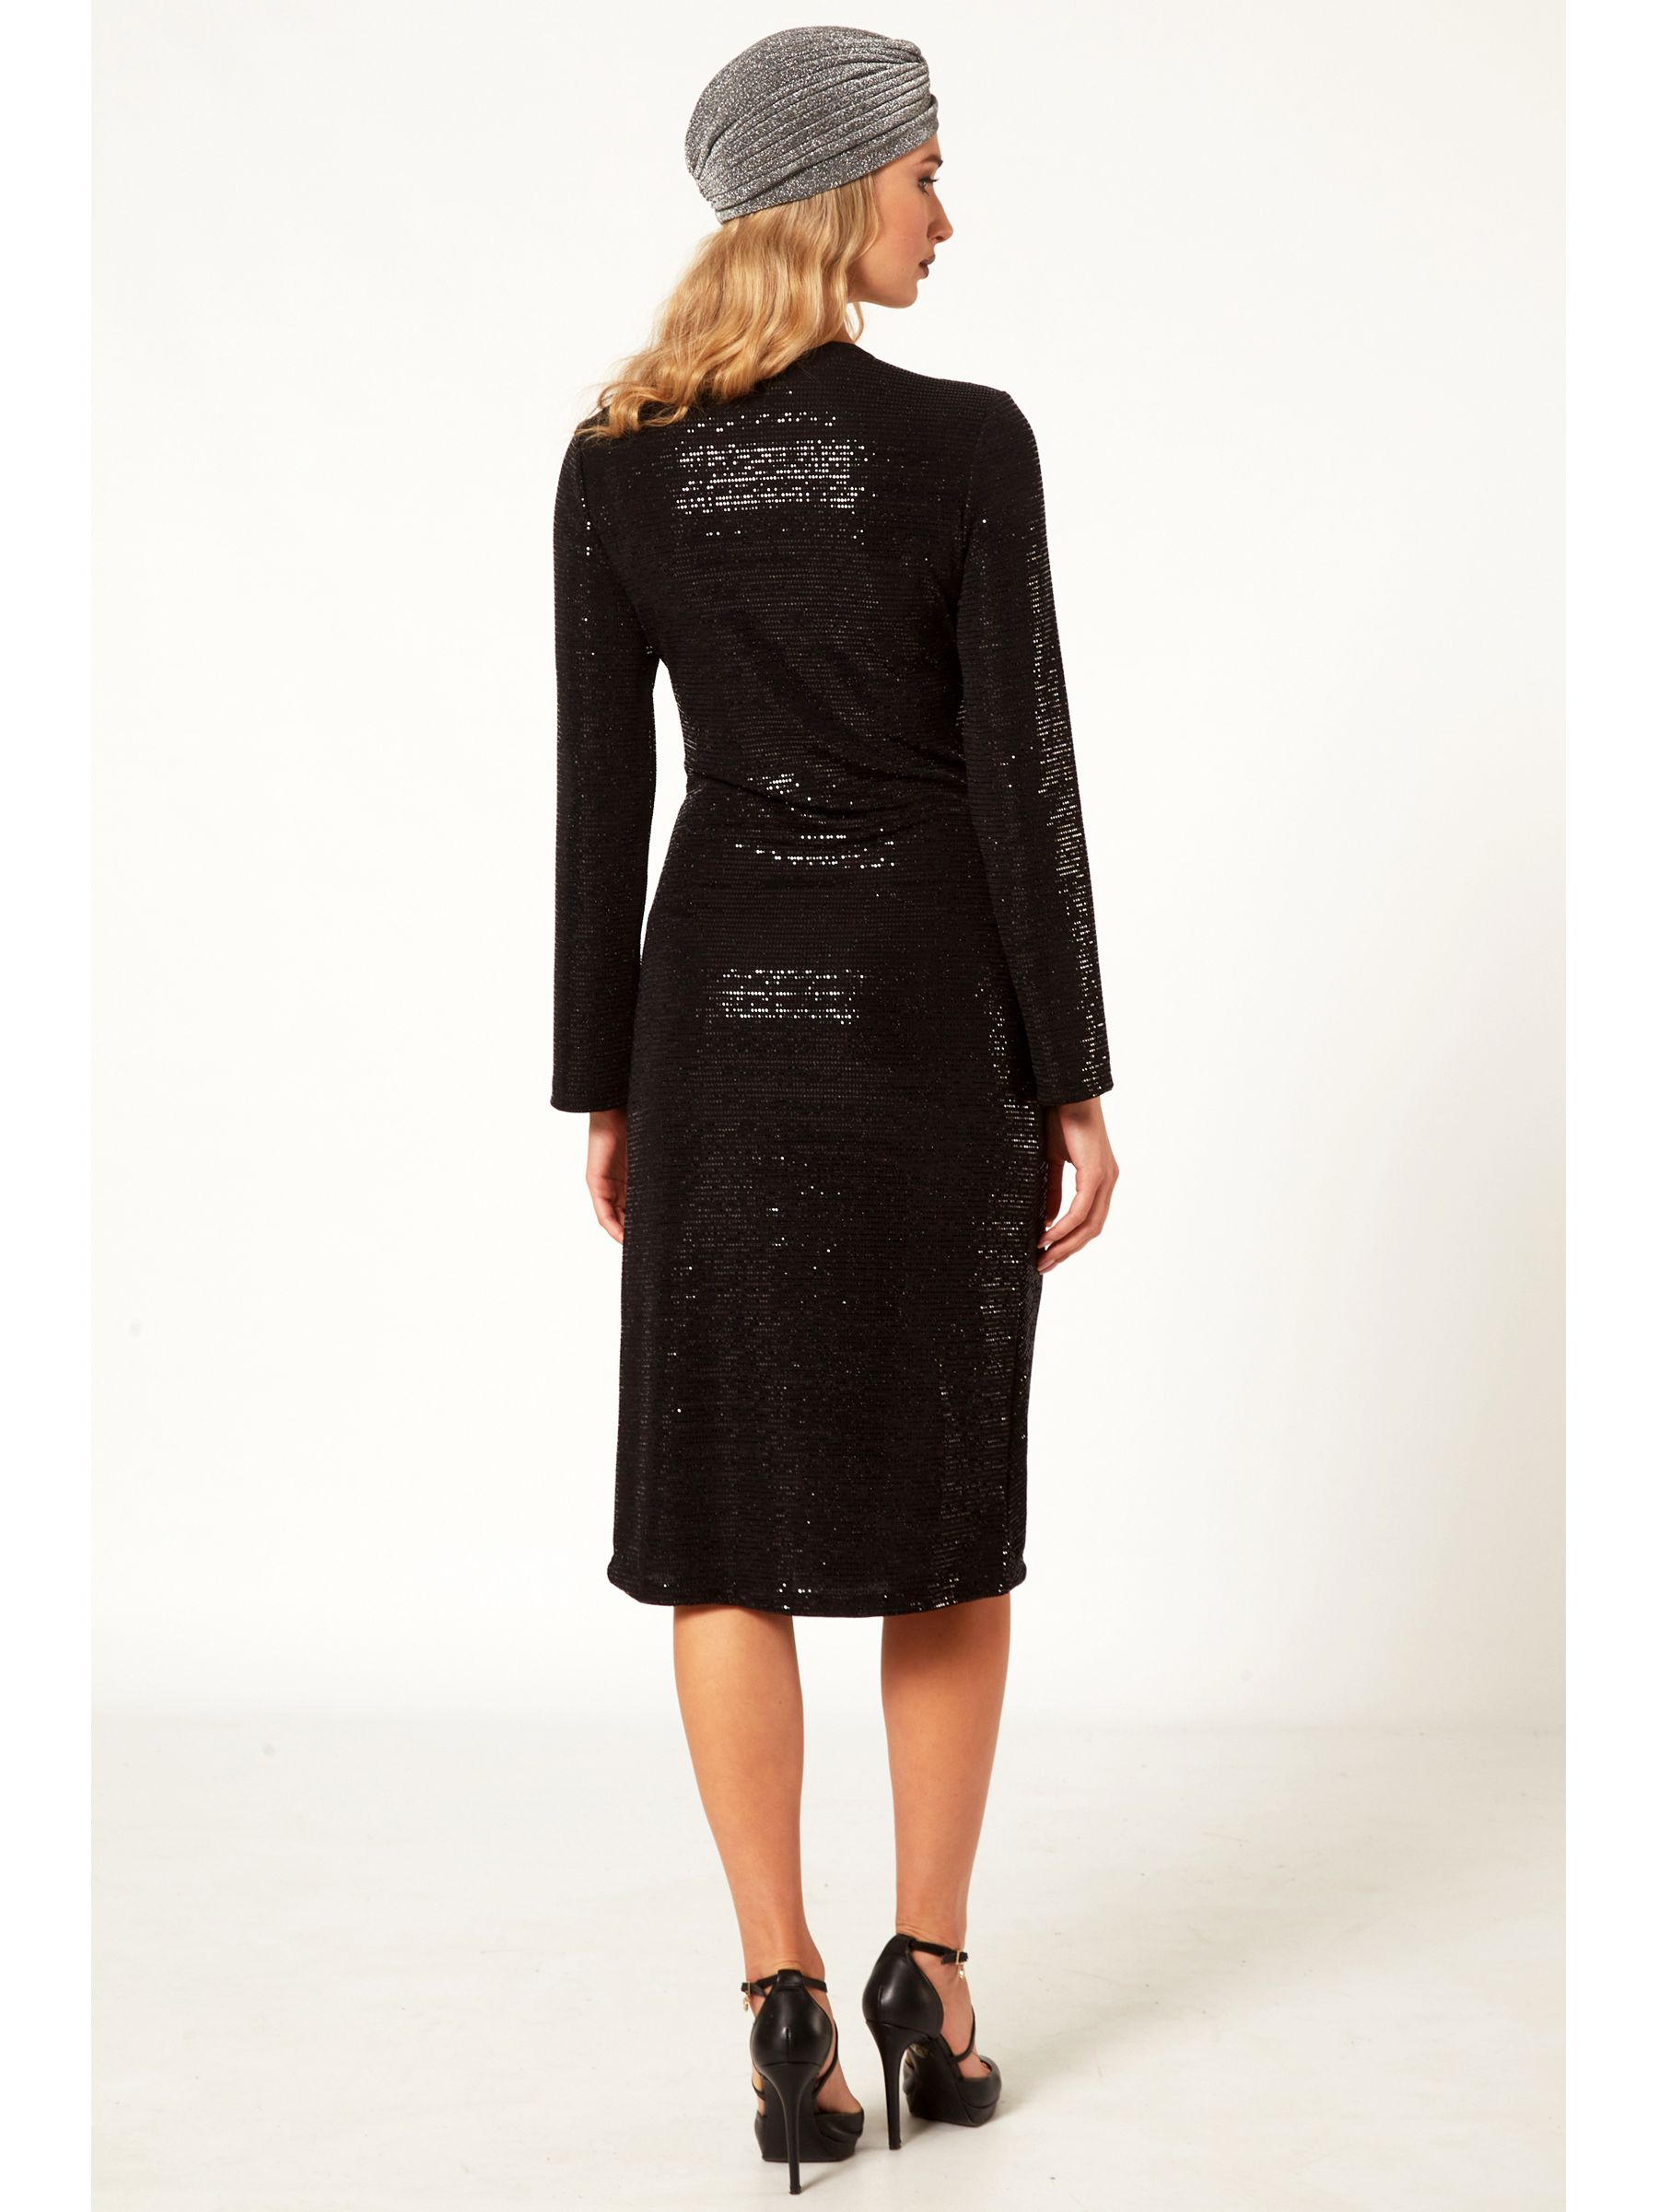 Φόρεμα μαύρο παγιέτα με σχίσιμο εμπρός και σούρα  D22222/BLACK